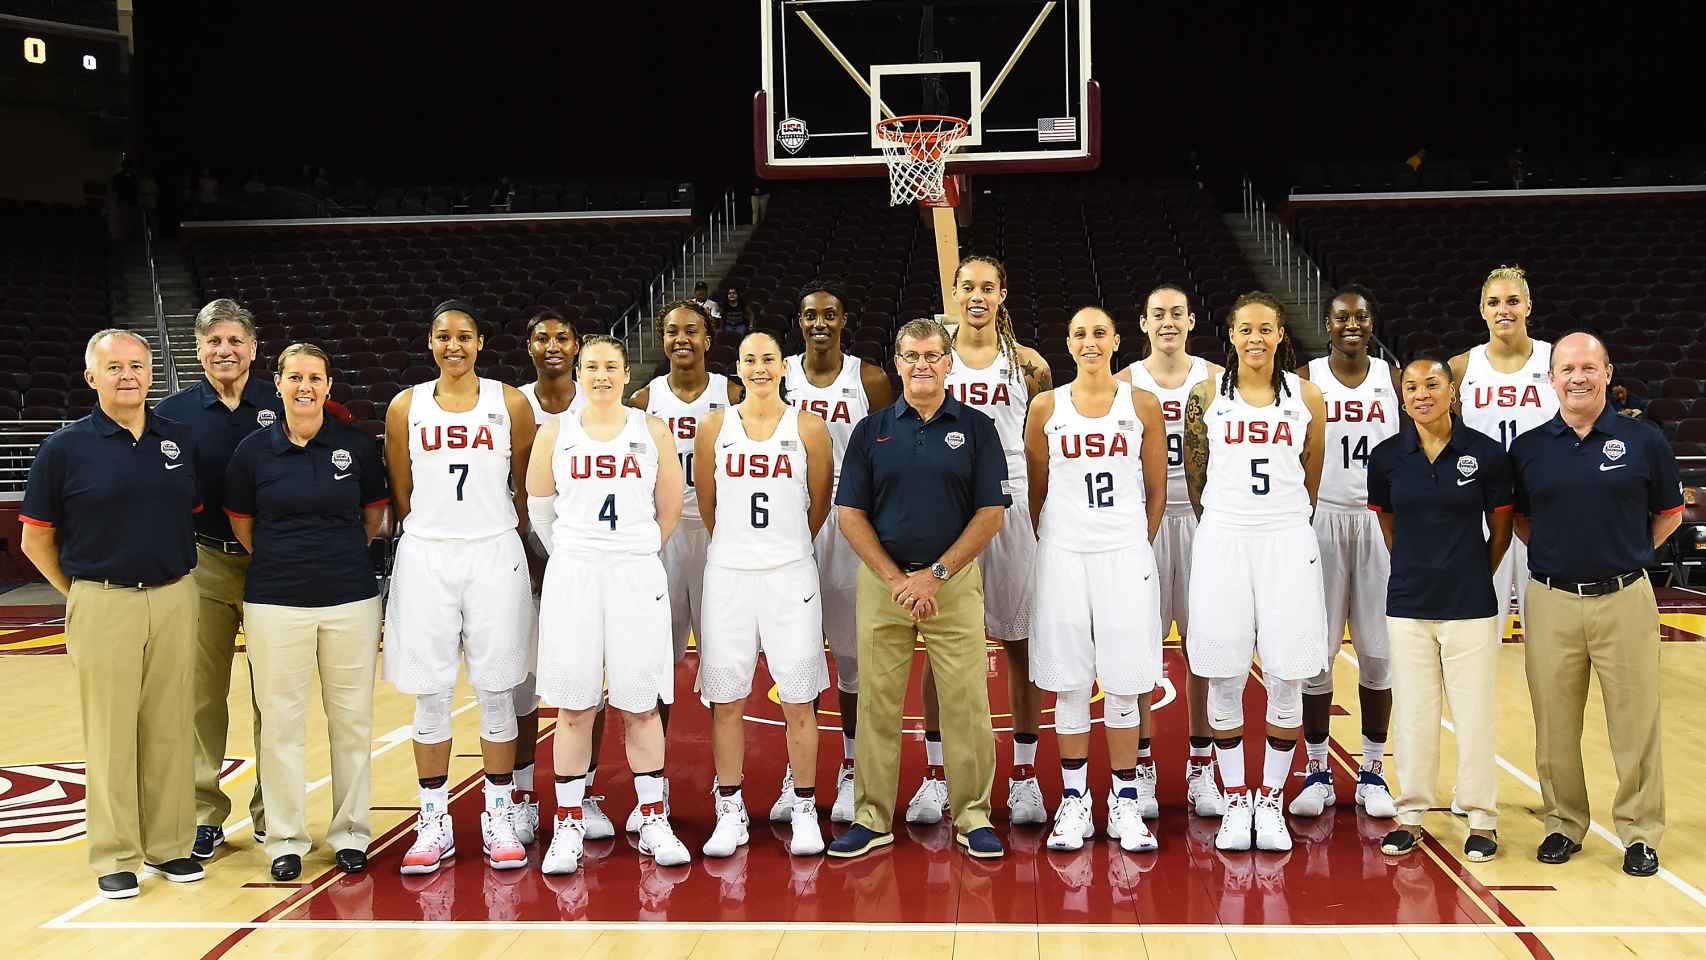 Selección femenina olímpica en baloncesto de USA.